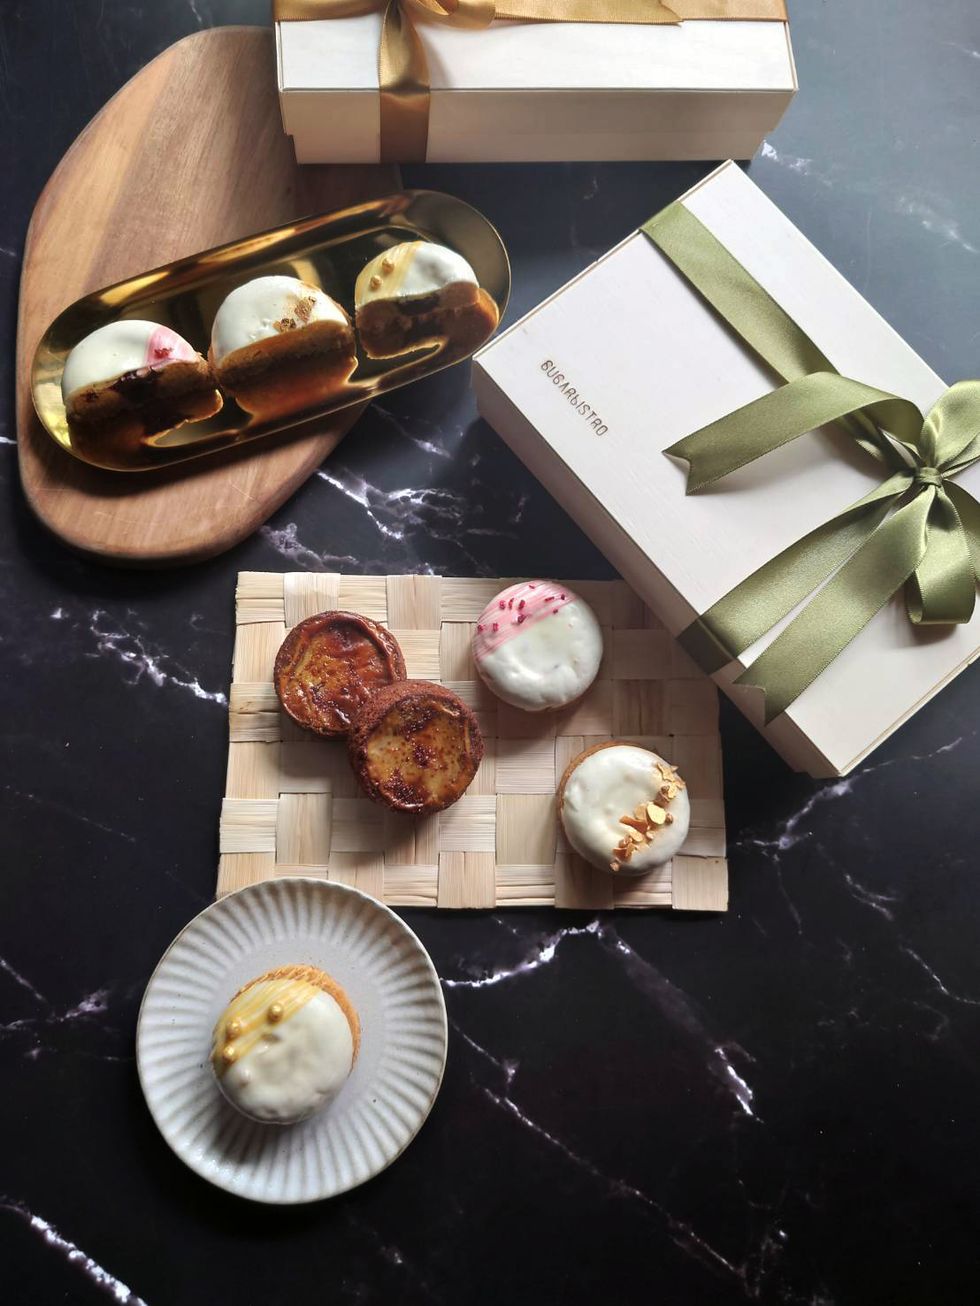 sugarbistro推出白樺木中秋月餅禮盒！傳統結合創新法式月餅「棕櫚糖薩瓦琳蛋糕」吃出層層驚喜